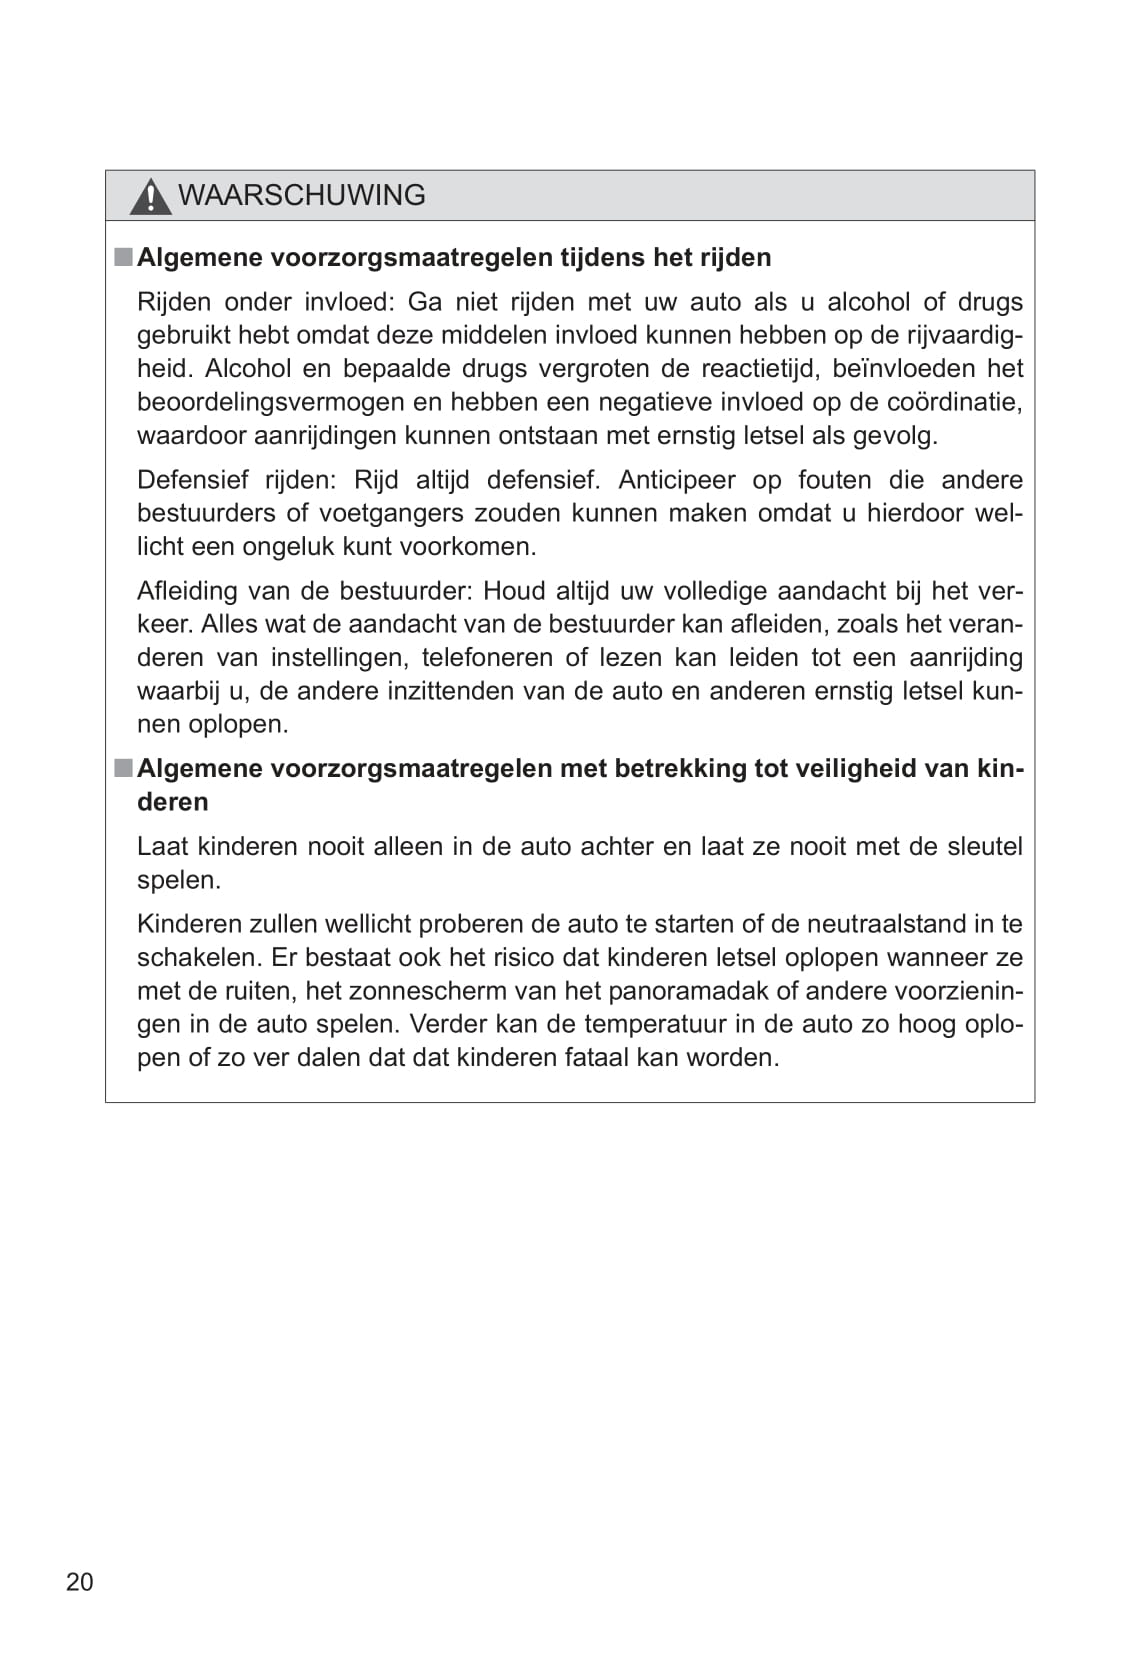 2011-2012 Toyota Verso-S Bedienungsanleitung | Niederländisch